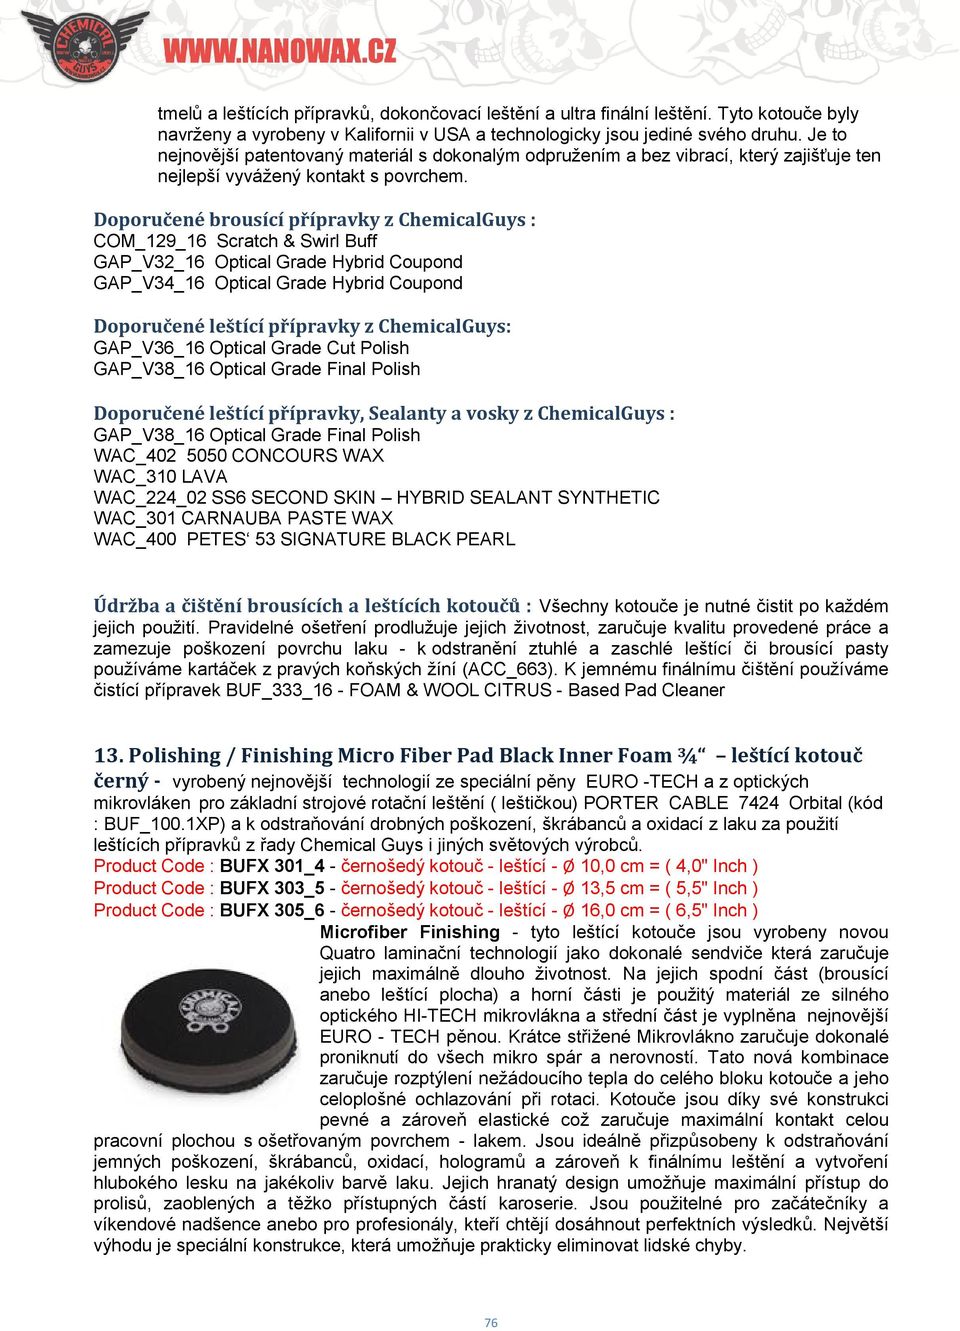 Doporučené brousící přípravky z ChemicalGuys : COM_129_16 Scratch & Swirl Buff GAP_V32_16 Optical Grade Hybrid Coupond GAP_V34_16 Optical Grade Hybrid Coupond Doporučené leštící přípravky z